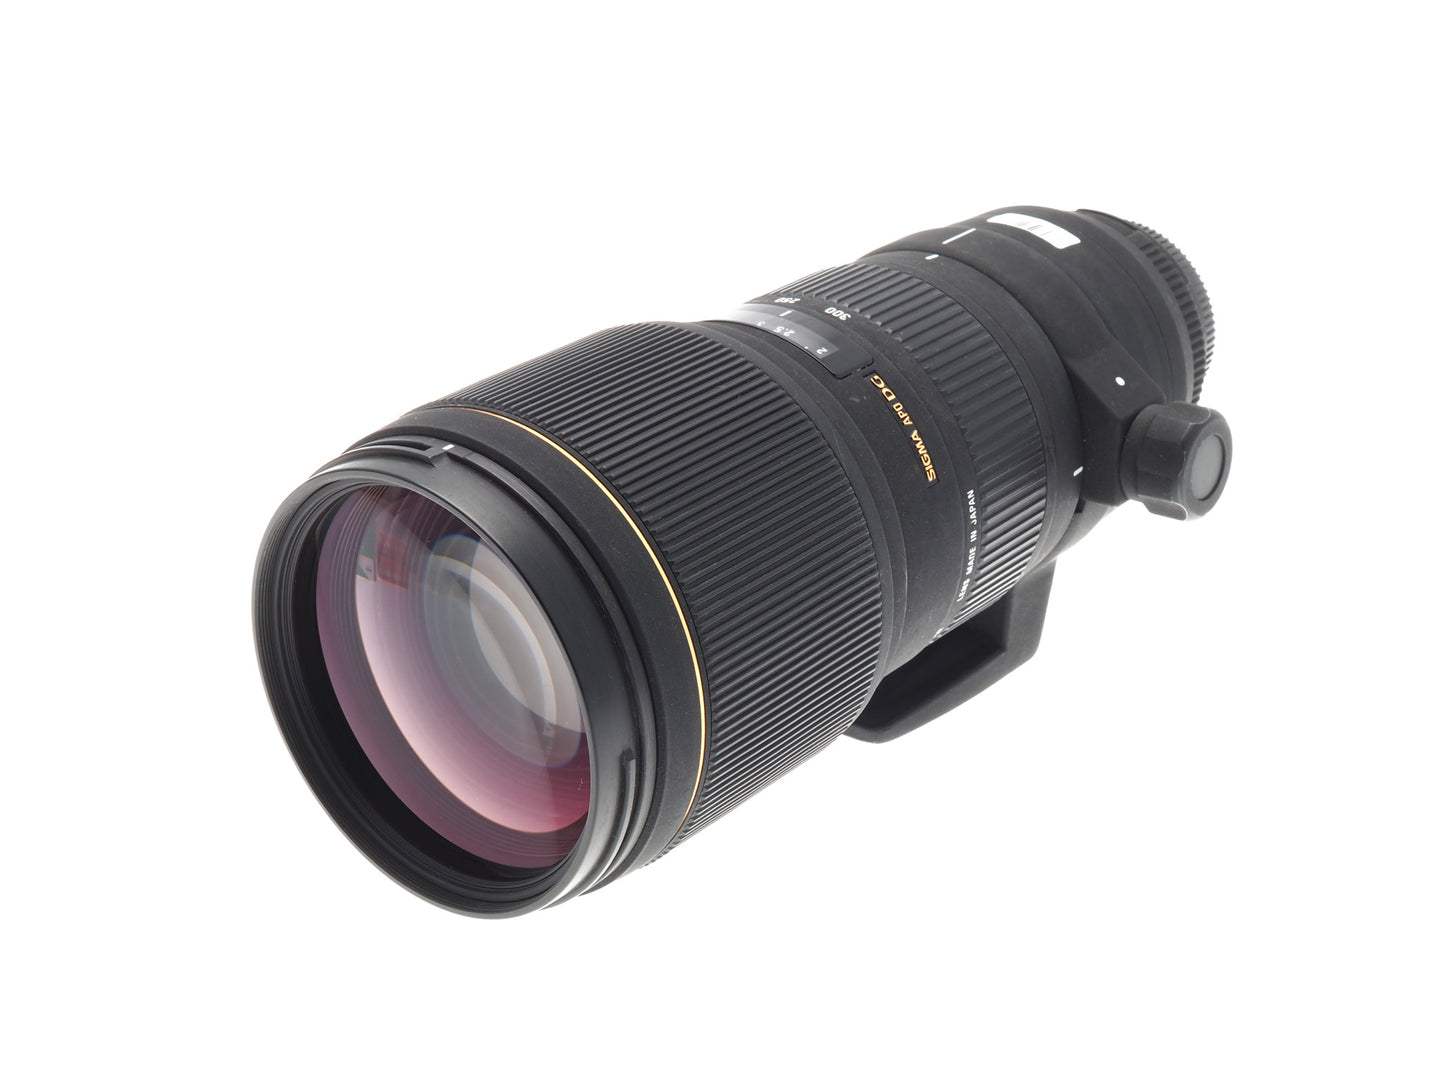 Sigma 100-300mm f4 APO EX DG HSM - Lens